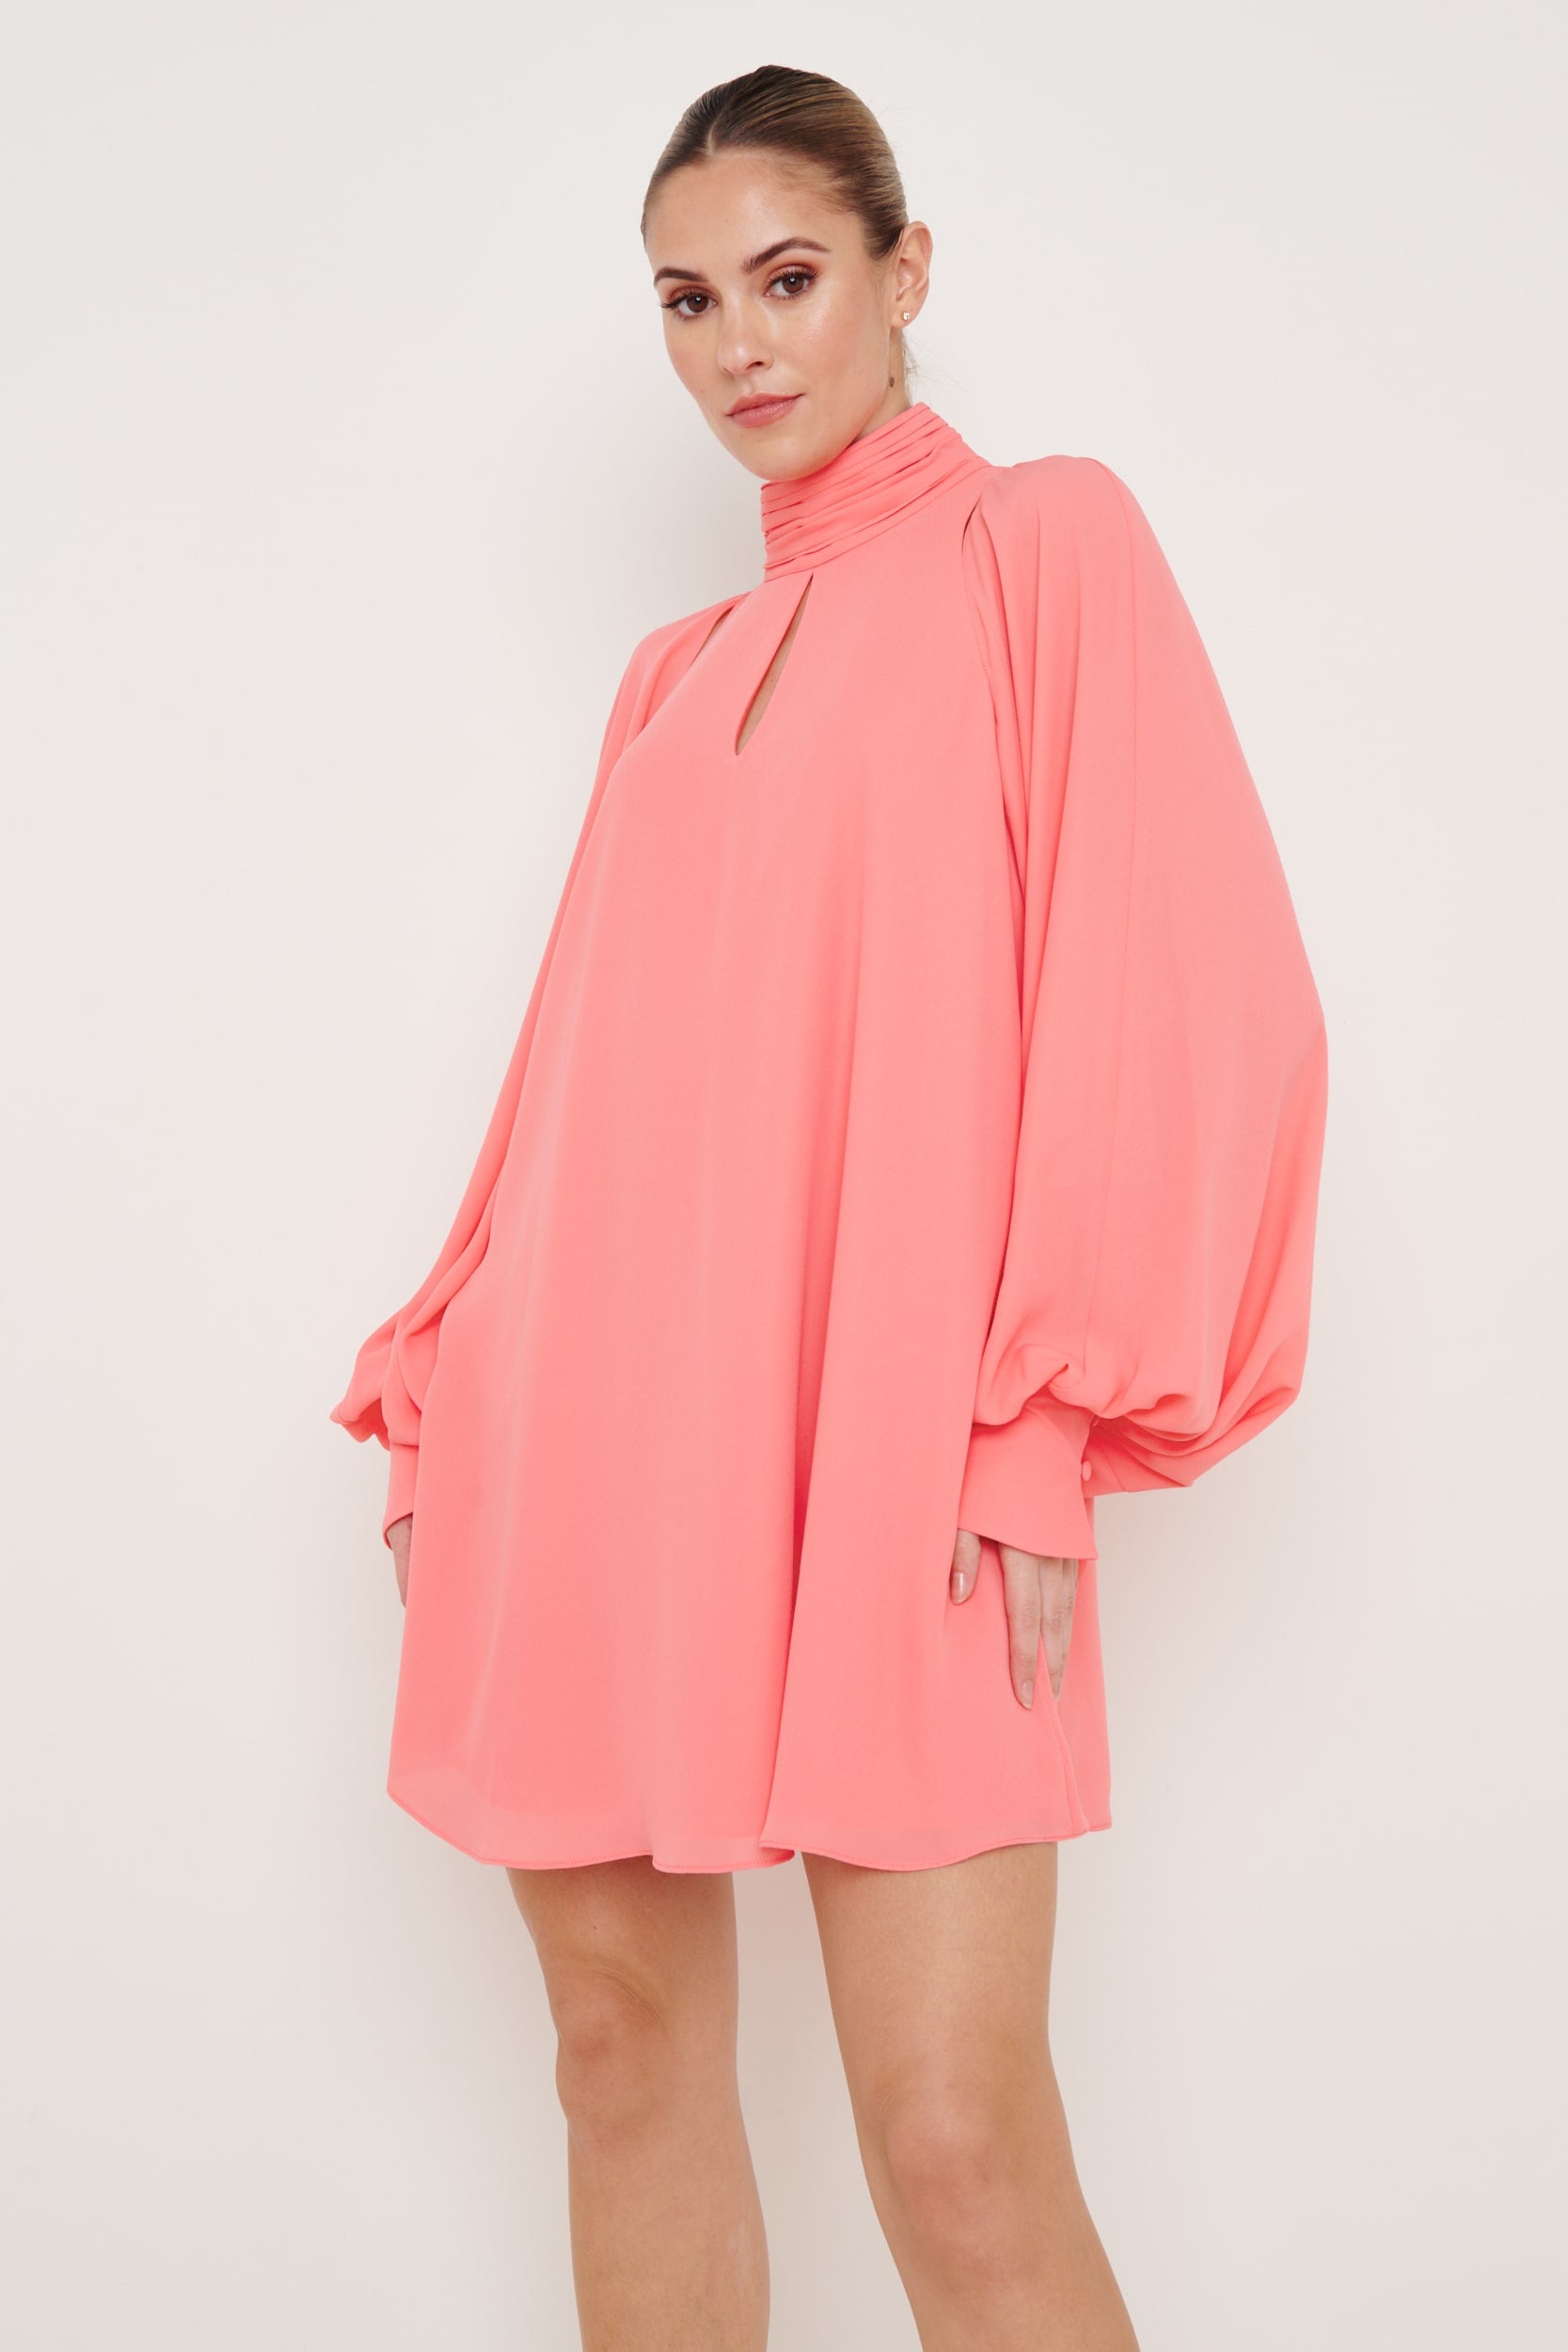 Romy Chiffon Mini Dress - Coral, 10